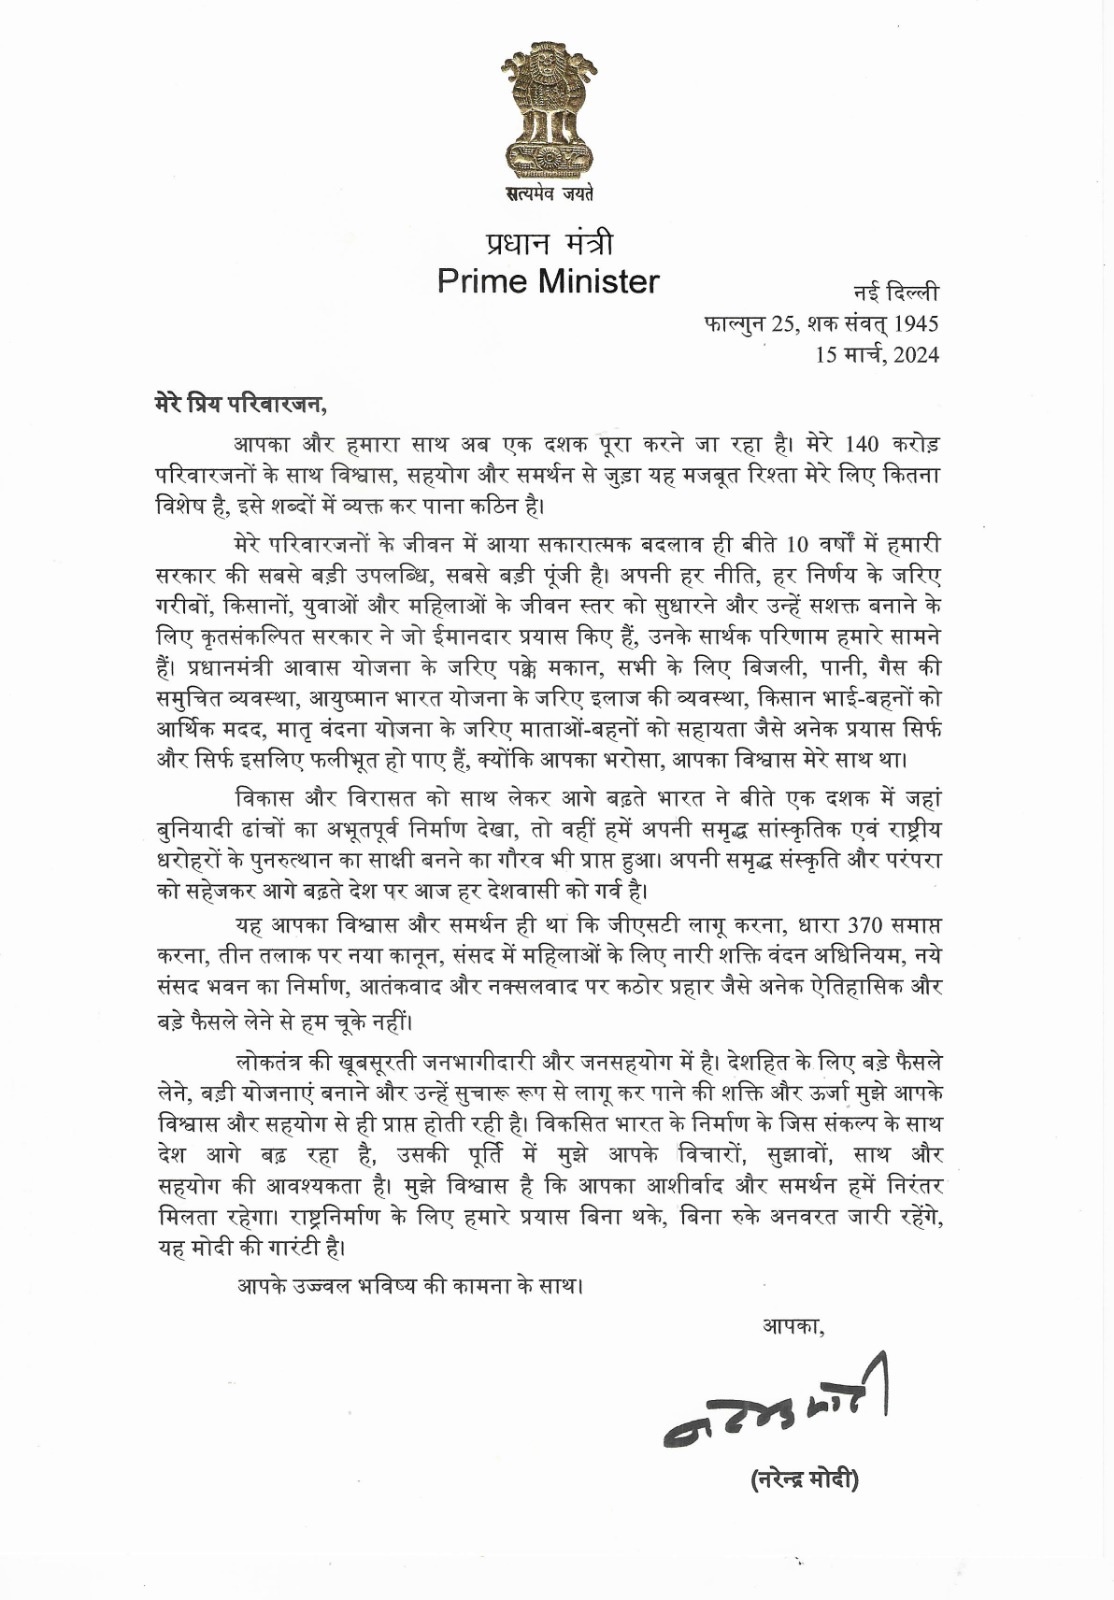 प्रधानमंत्री नरेन्द्र मोदी के इस पत्र को केंद्रीयमंत्री अश्वनी वैष्णव ने एक्स हैंडल पर साझा किया है।